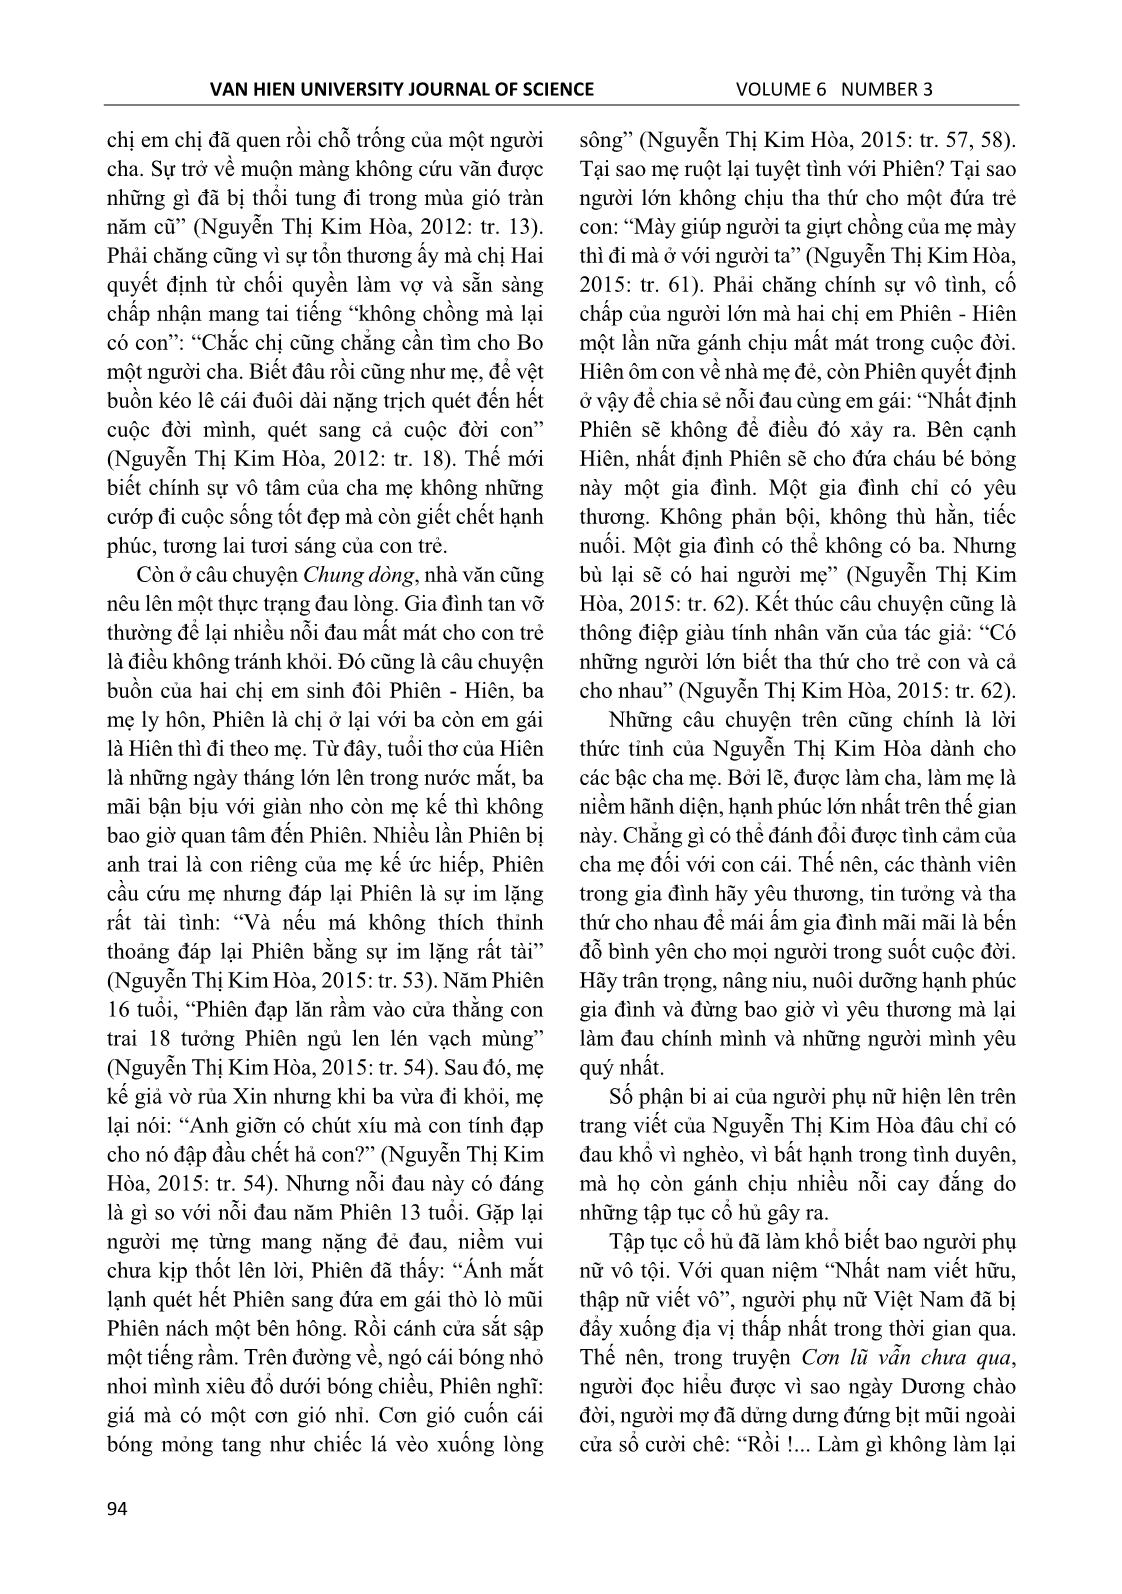 Cảm hứng nhân văn trong văn xuôi Nguyễn Thị Kim Hòa trang 7